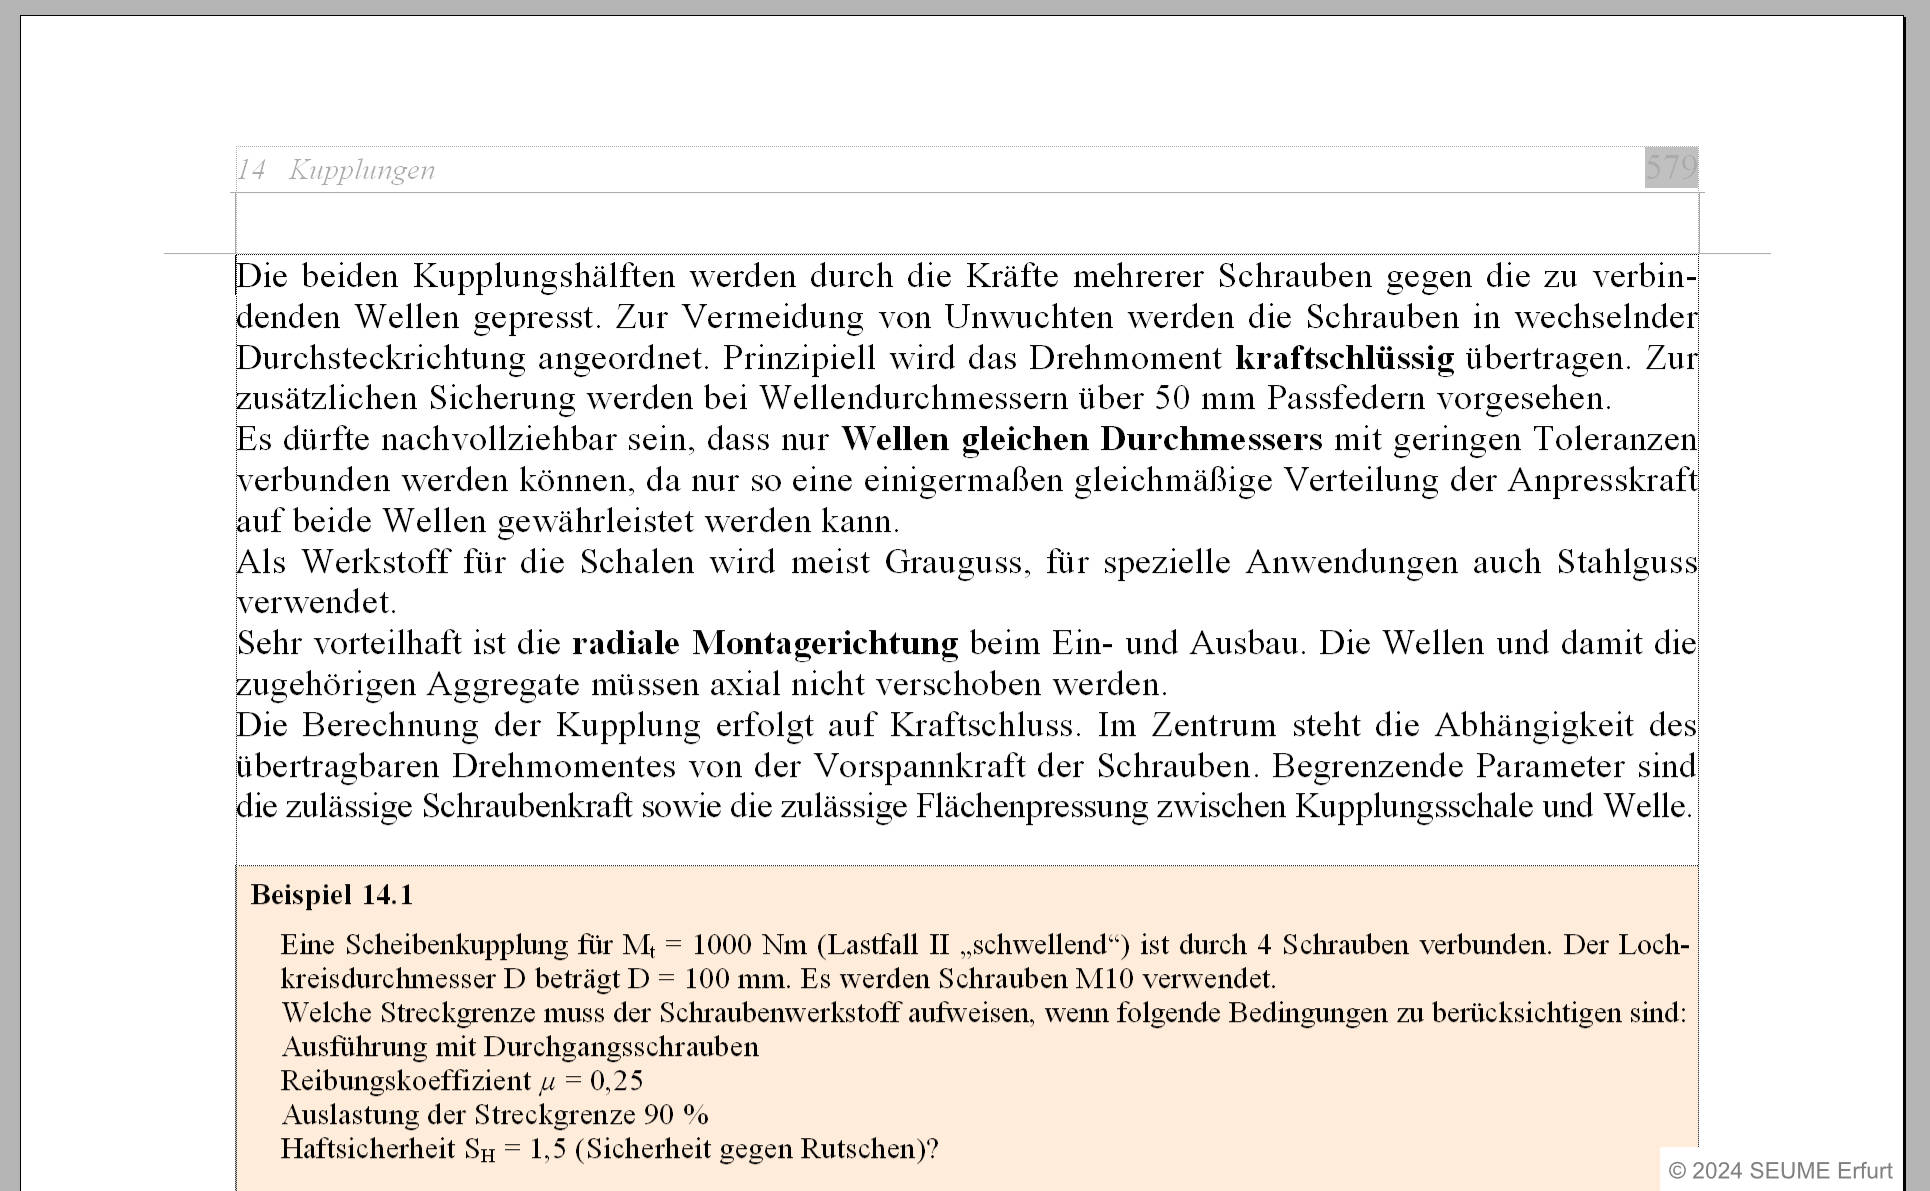 Bildschirmfoto einer Druckseite mit Text und einem Beispiel im Satzprogramm.